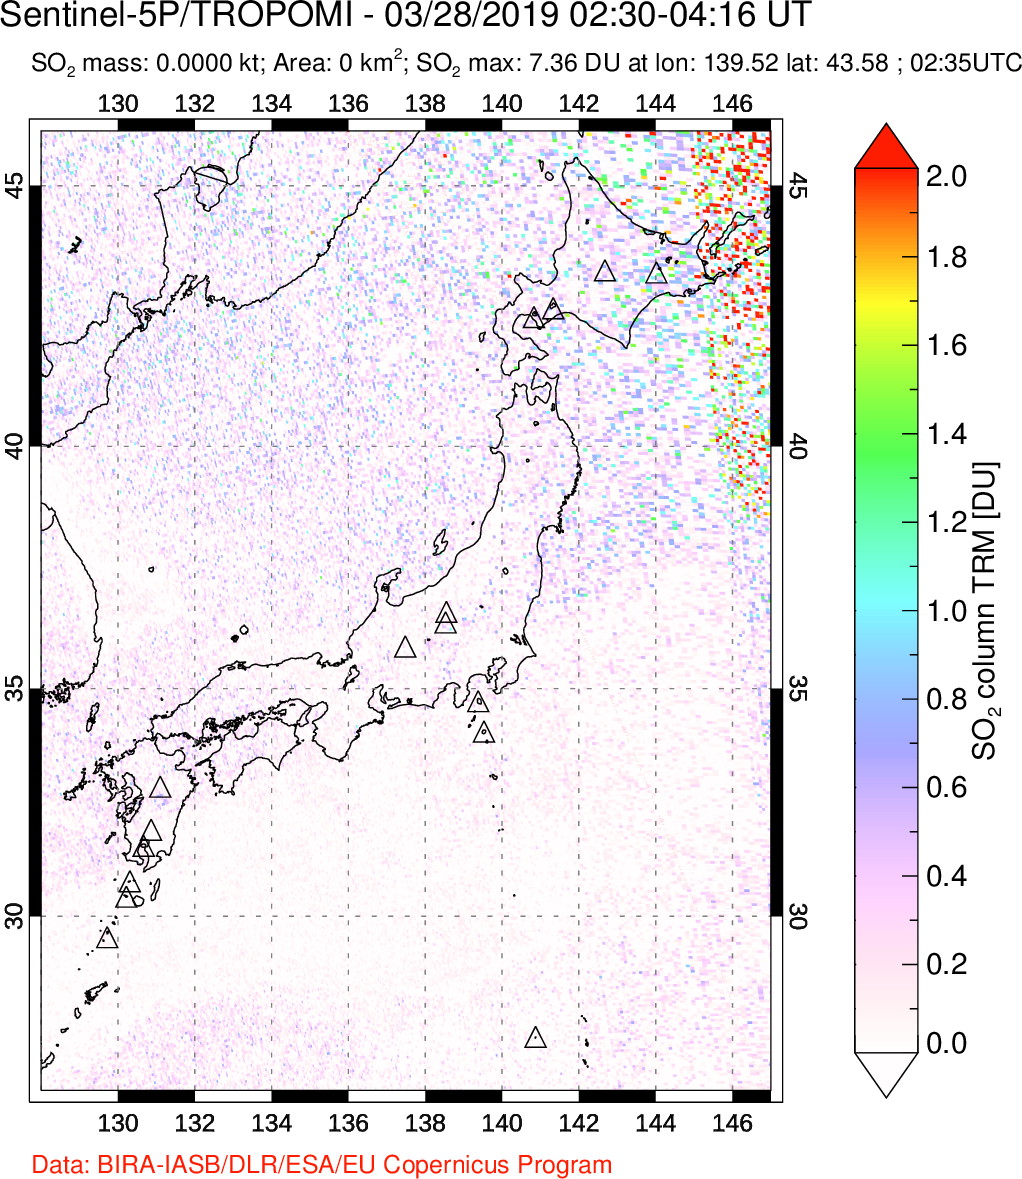 A sulfur dioxide image over Japan on Mar 28, 2019.